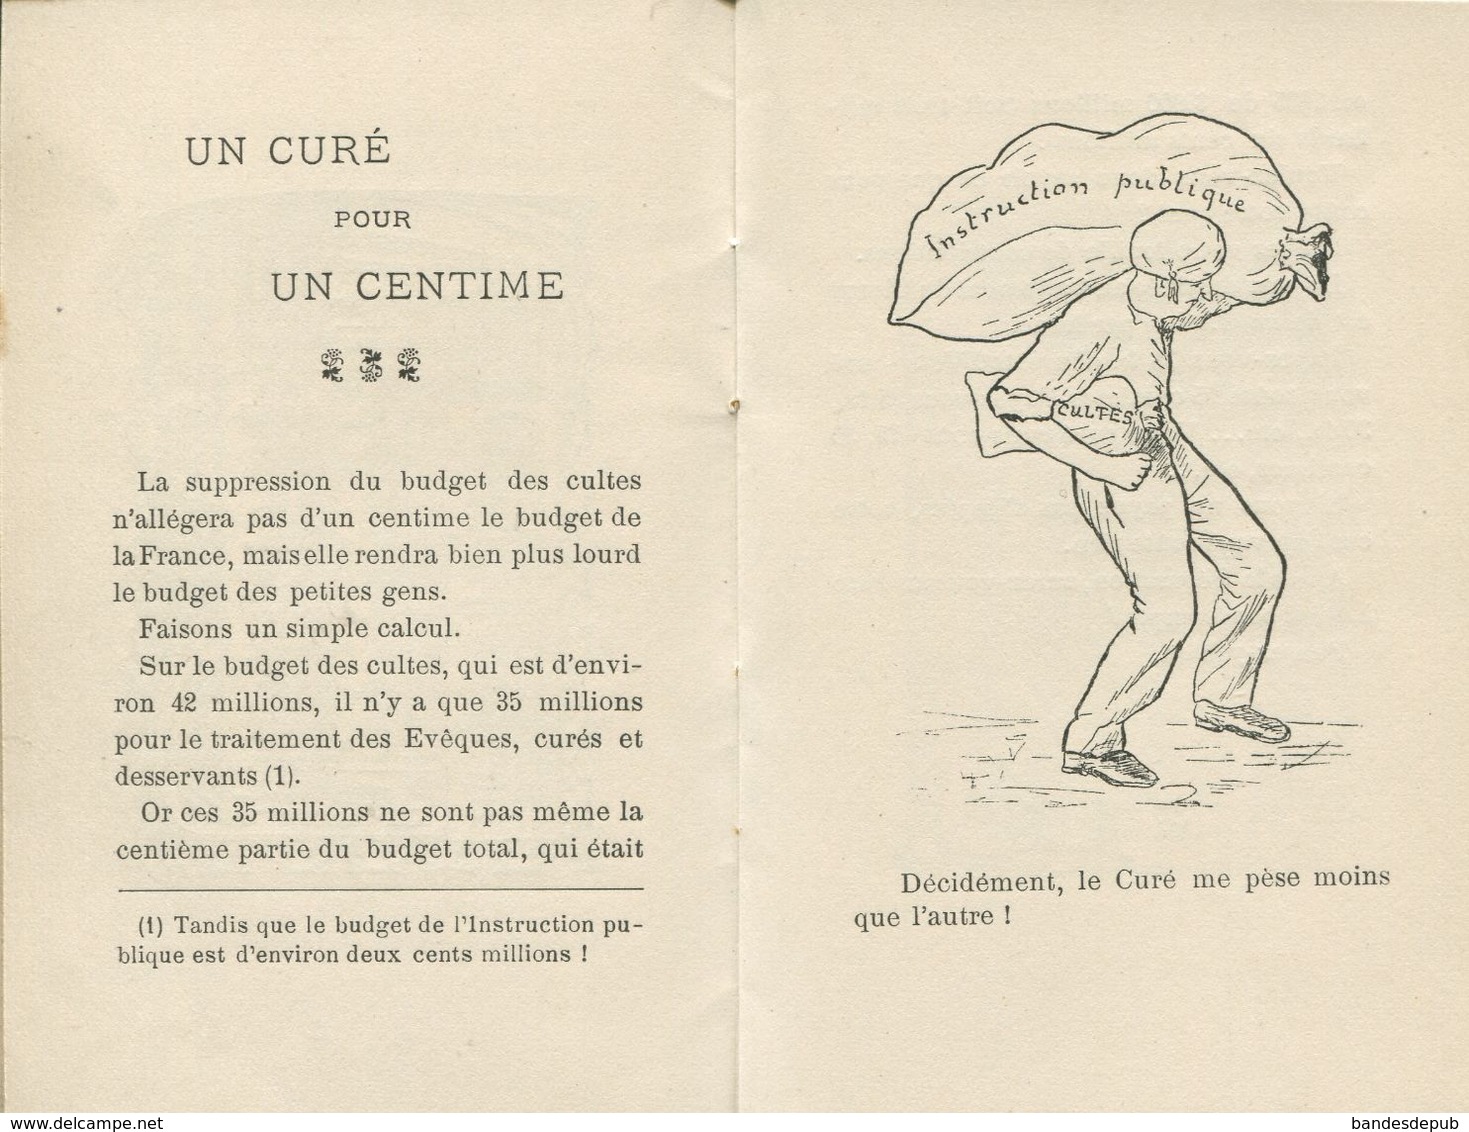 CALENDRIER 1906  Supplément Chronique Des Vosges 1er Avril 1906 Imp Cuny ST DIE Calendrier Illustré Politique - Petit Format : 1901-20